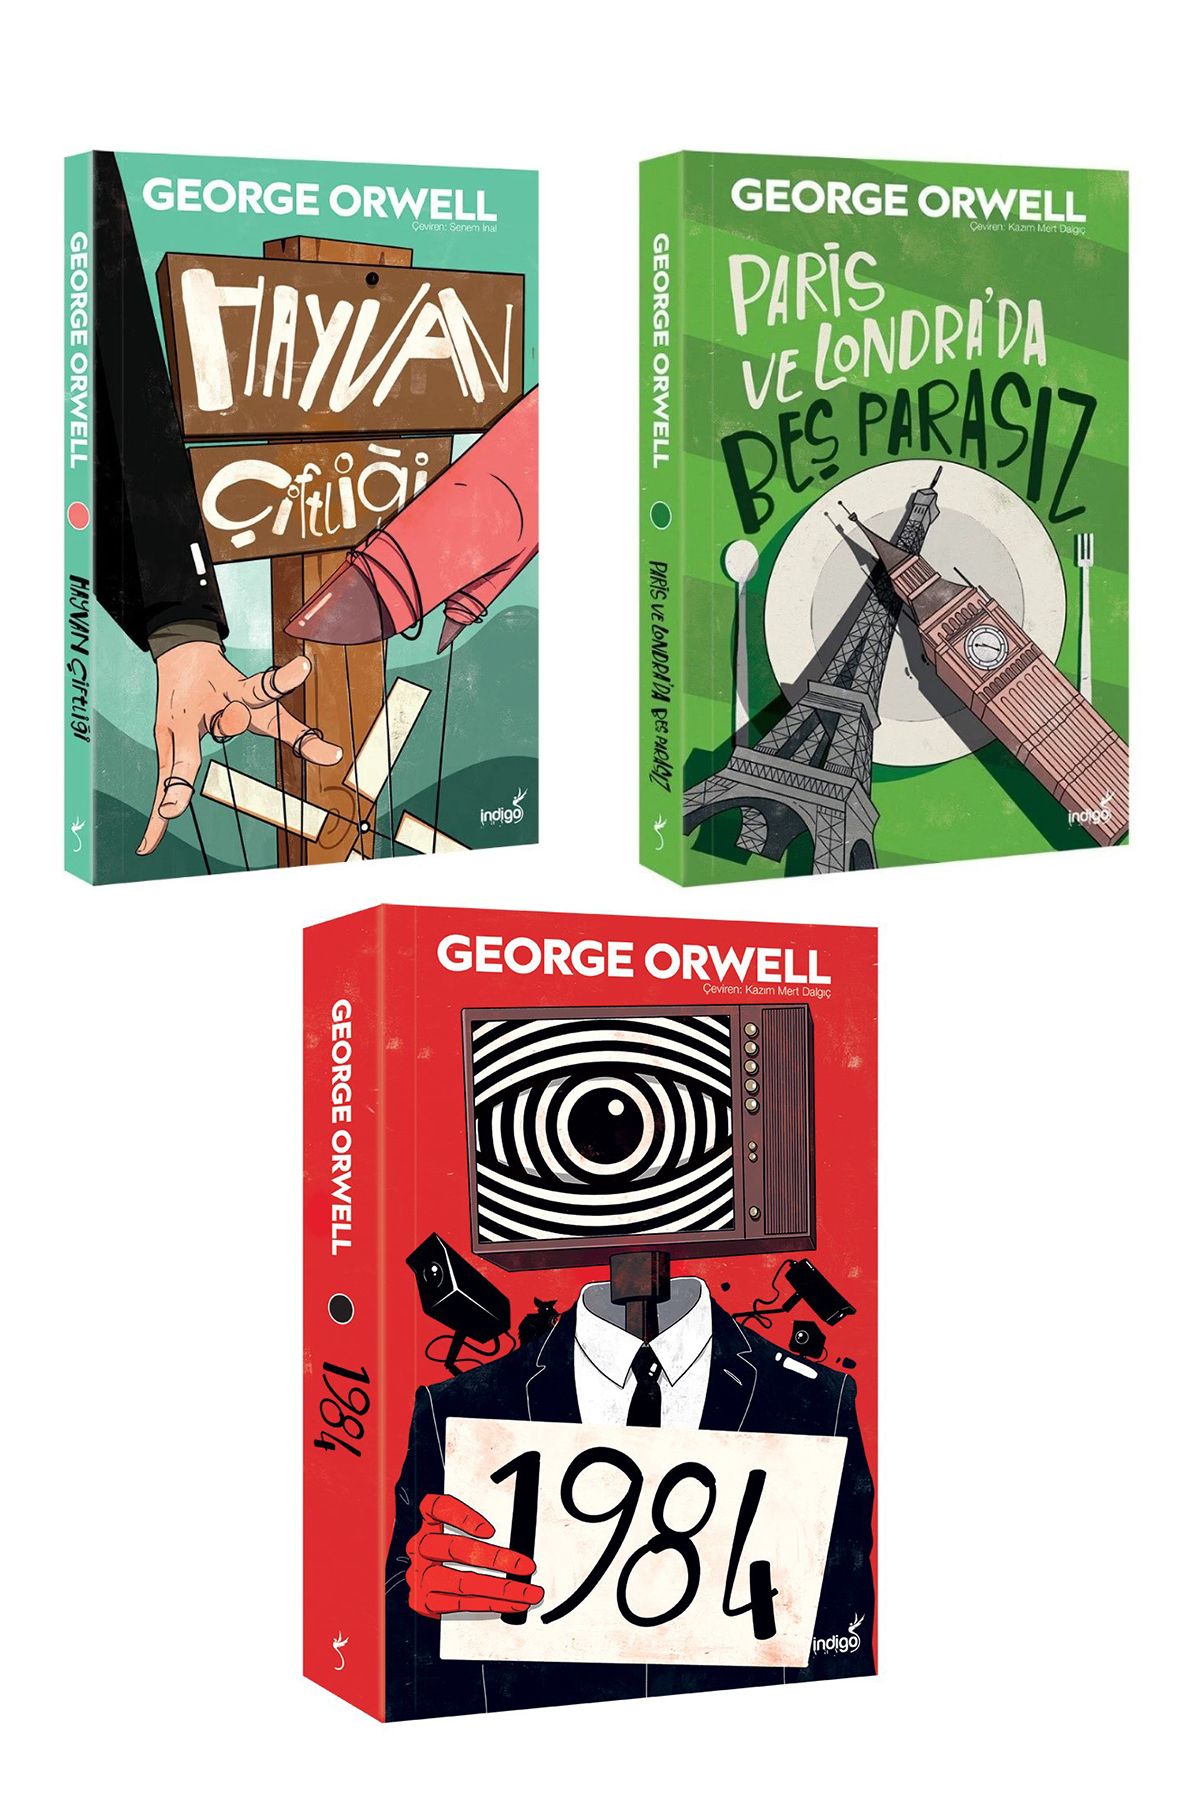 Hunga George Orwell - Hayvan Çiftliği - Paris Ve Londra’da Beş Parasız - 1984 - 3 Kitap Seti - Roman